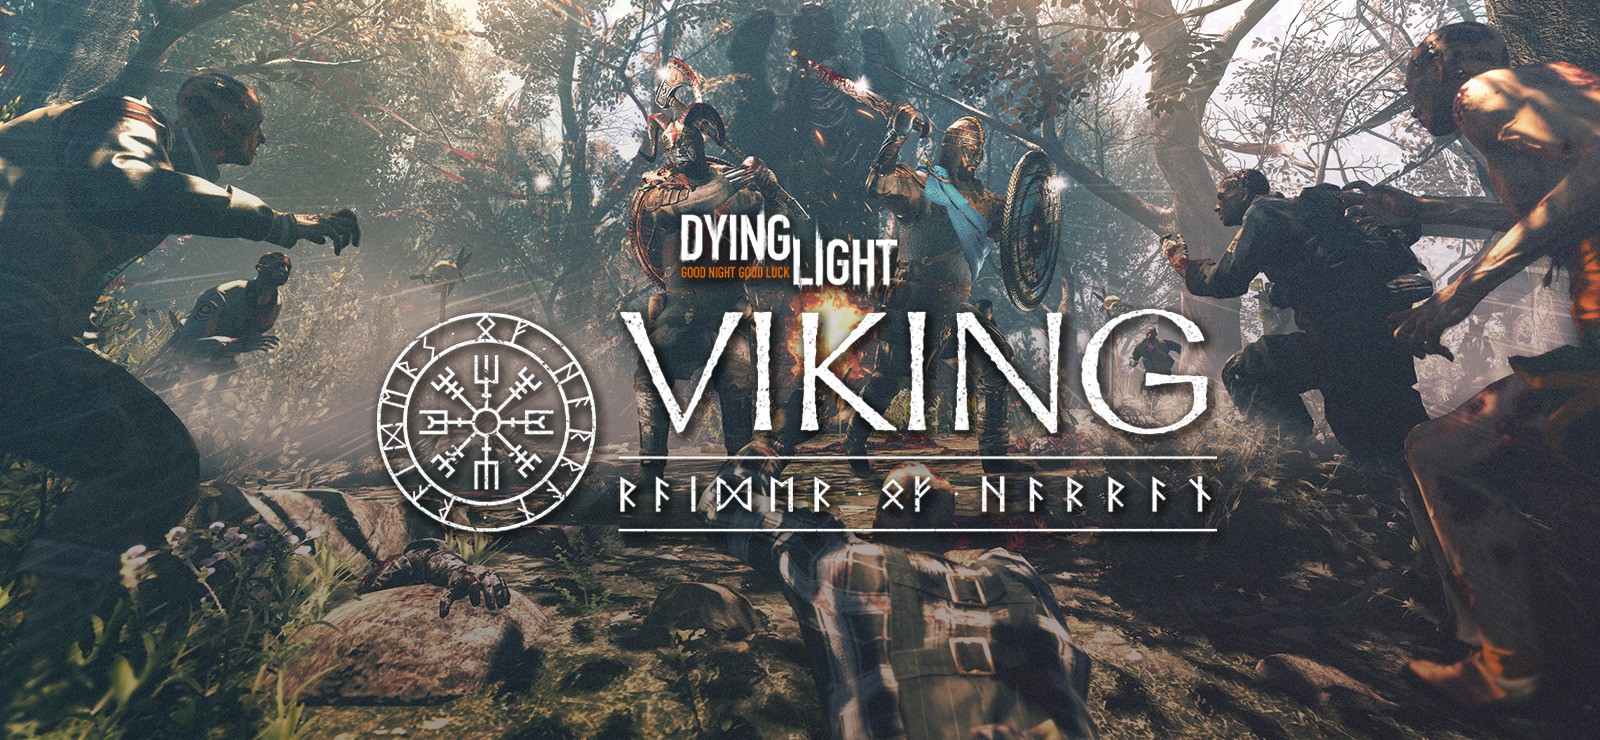 DLC جدید بازی Dying Light شما را به یک وایکینگ تبدیل می کند